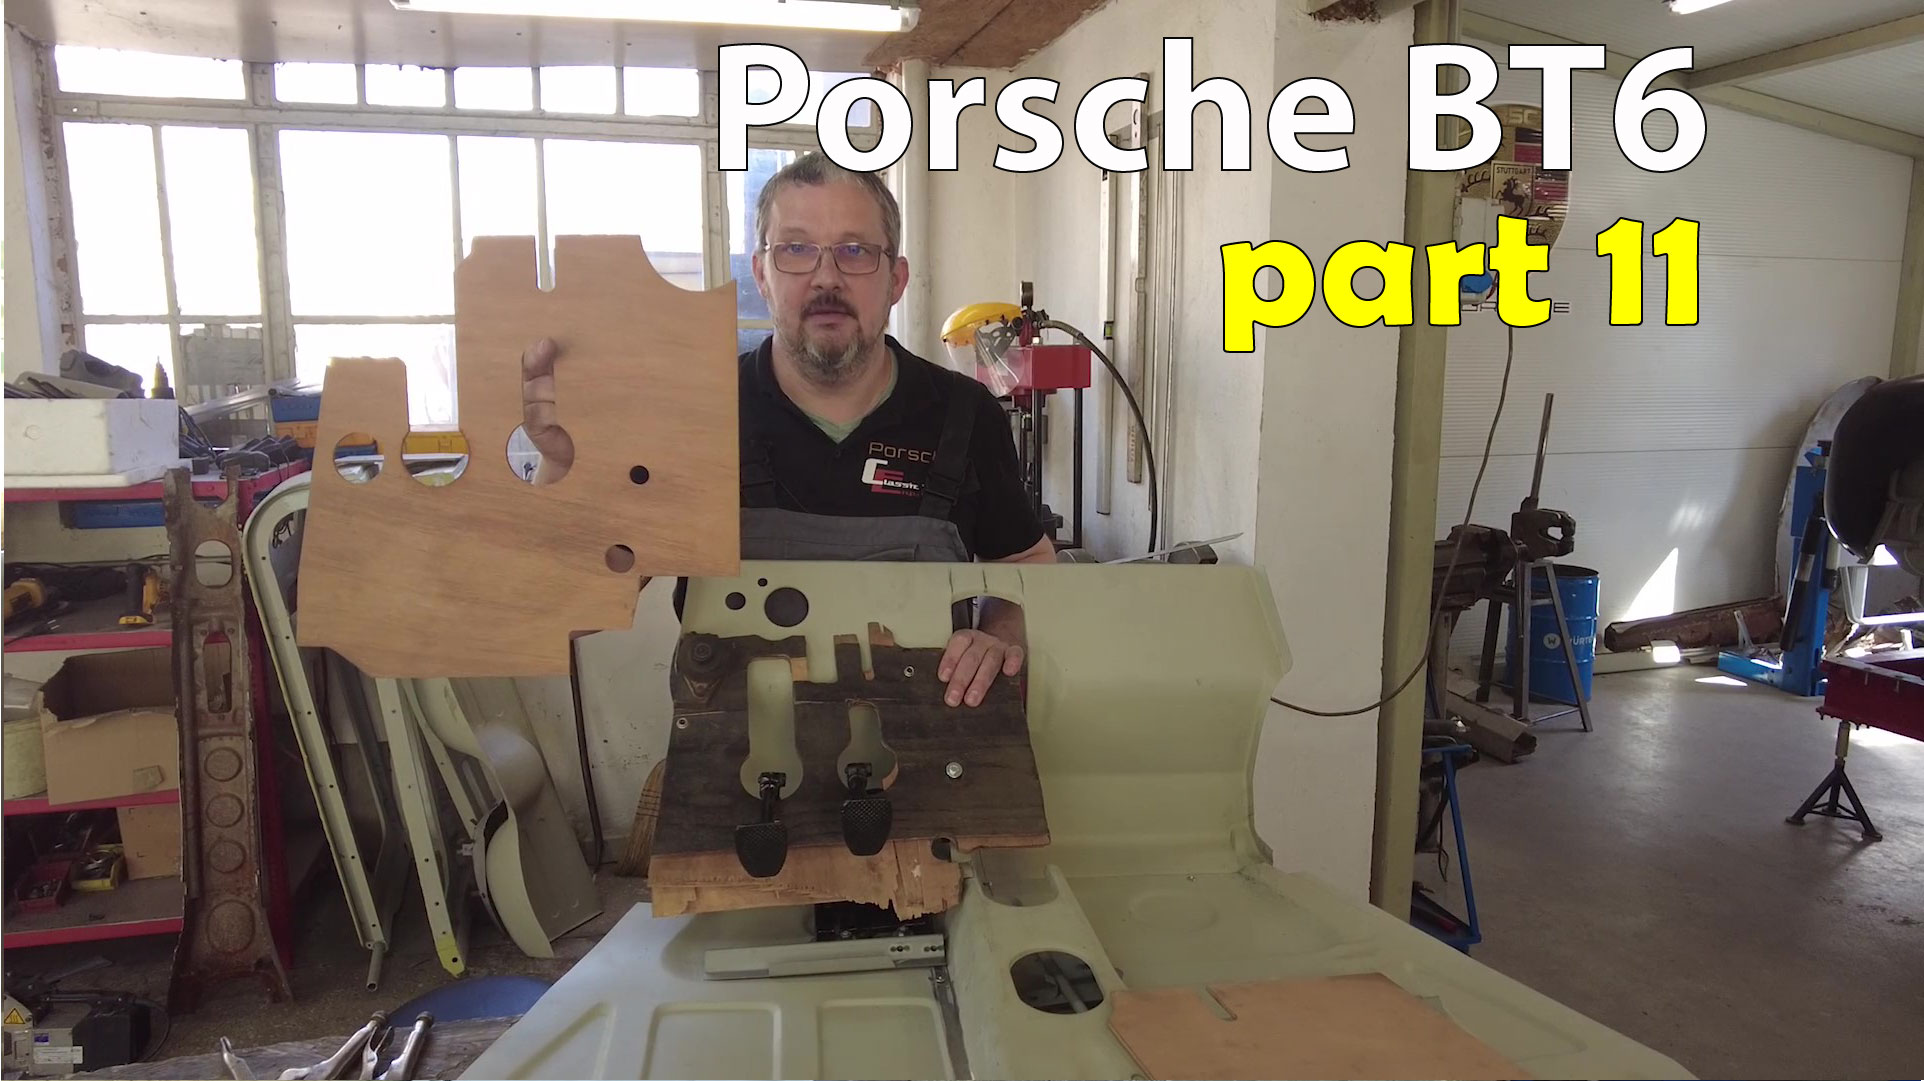 Porsche restoration - part 11